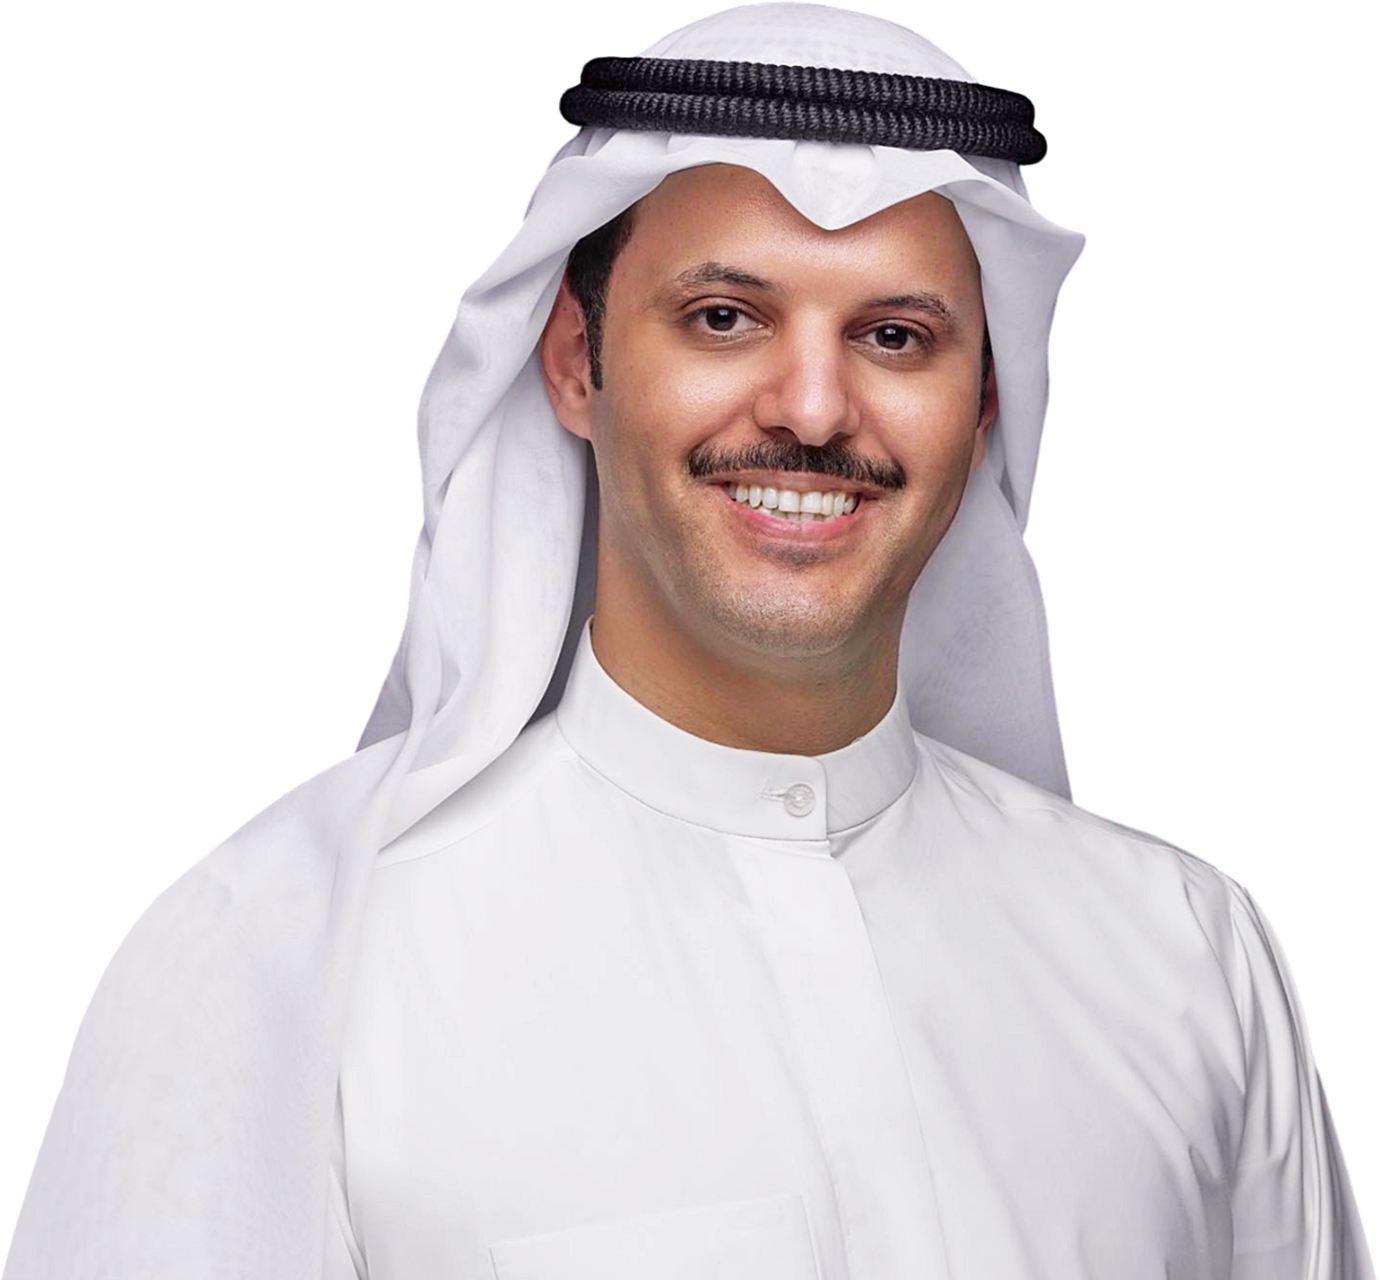 ابو شيبه يشعر بالثقة في عزيمة الناخبين الكويتيين للتغيير.